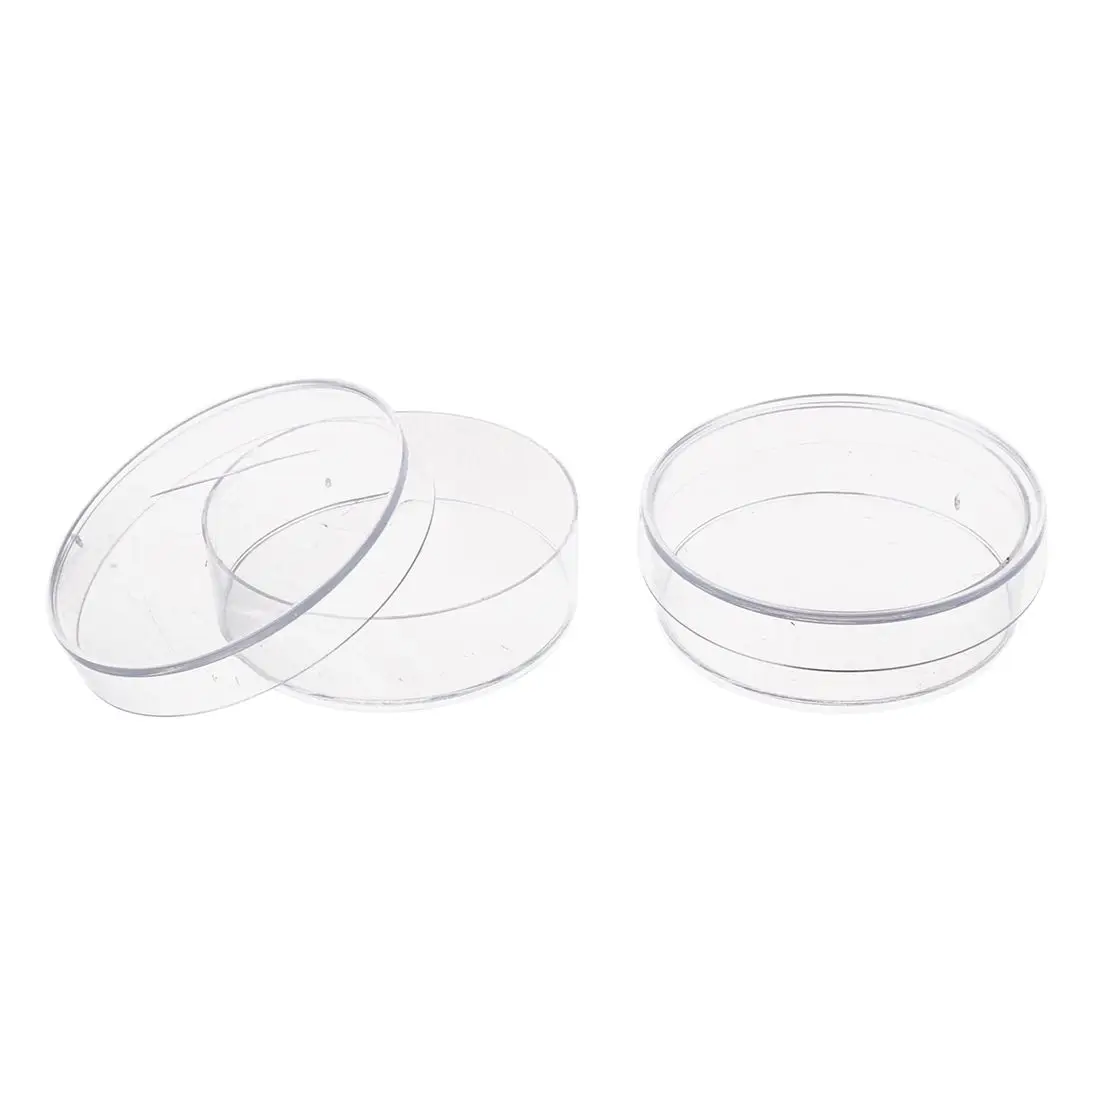 Горячая-10 шт. 35 мм x 10 мм стерильные пластиковые тарелки Петри с крышкой для LB плиты дрожжи (прозрачный цвет)